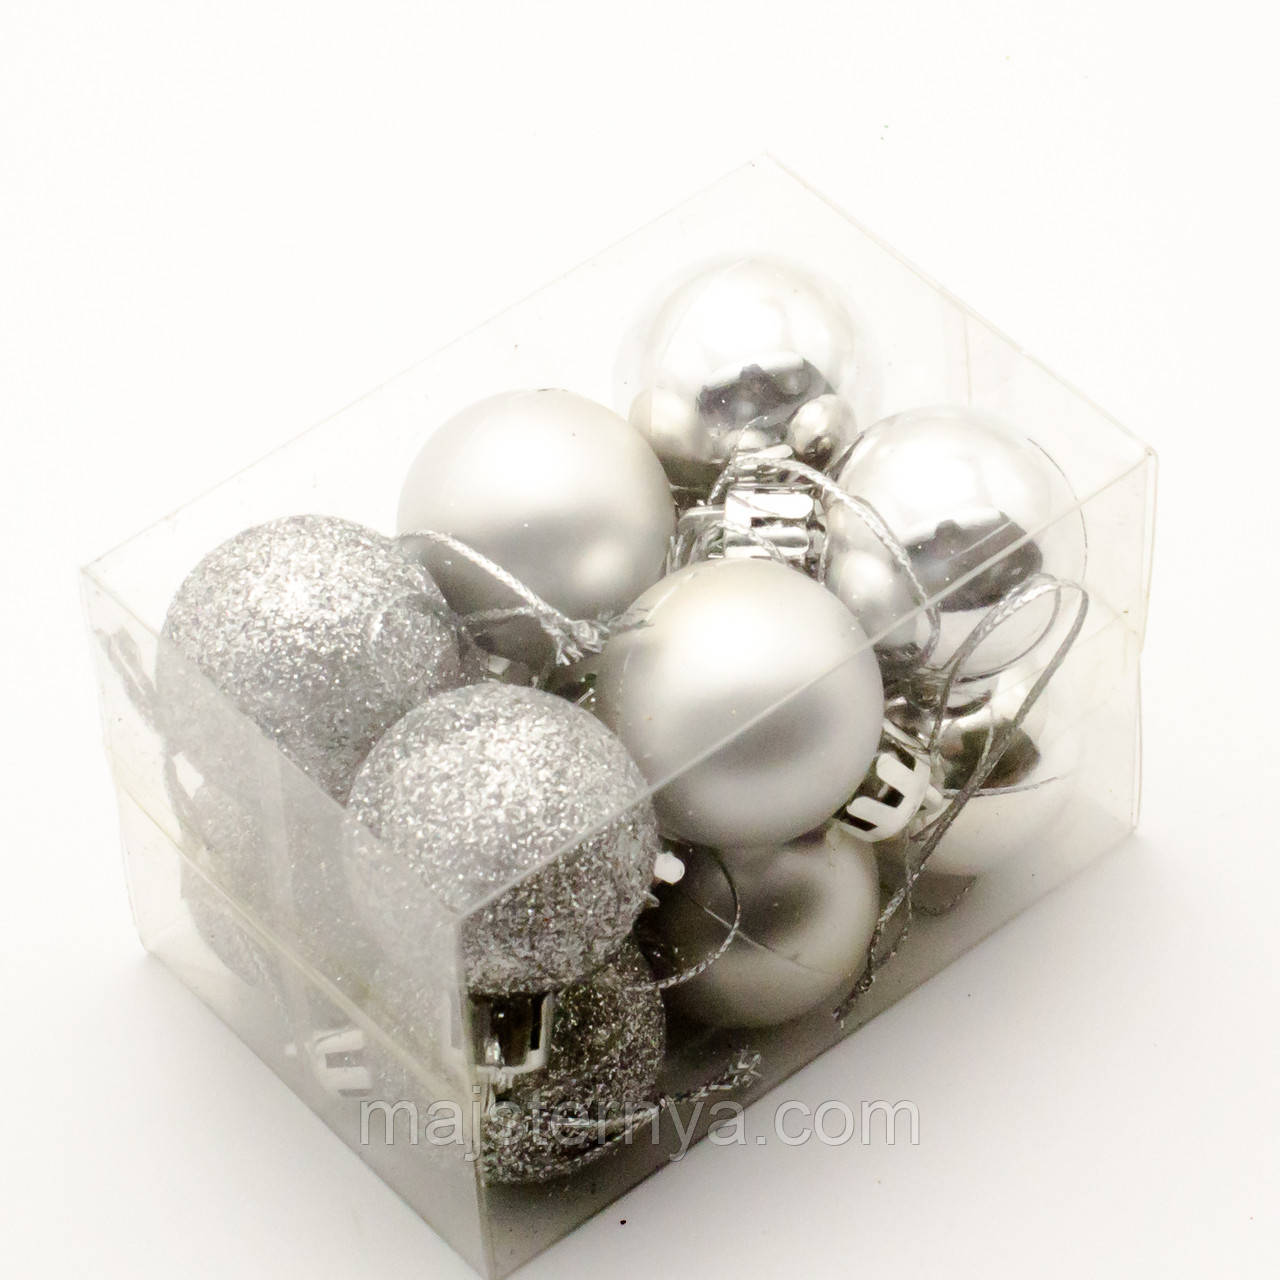 Новорічні іграшки на ялинку - кулі 8см (12шт в упаковці) срібного кольору